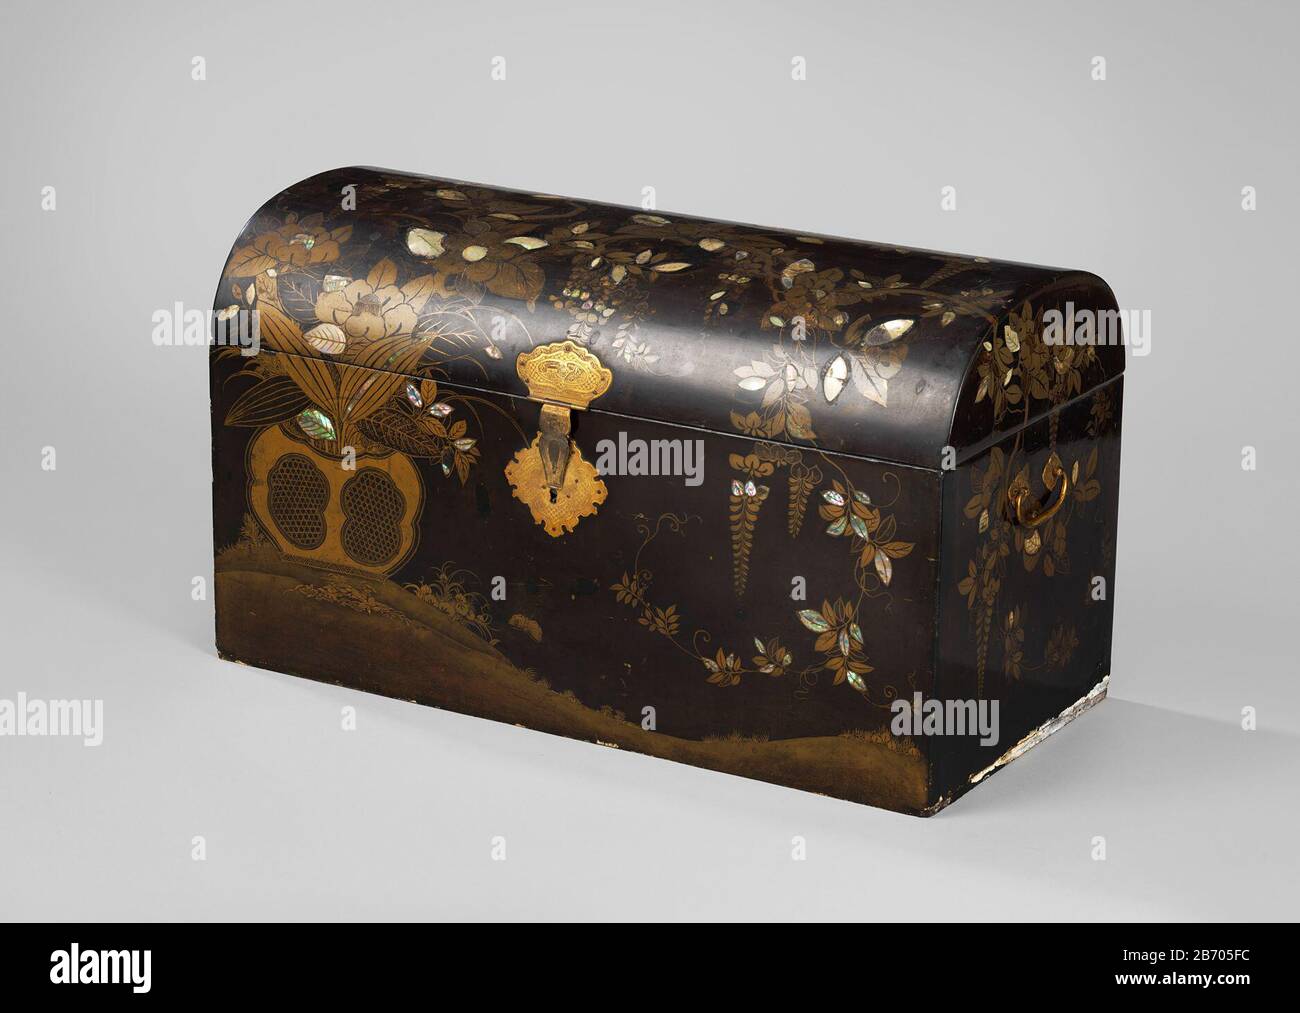 Koffer op voetstuk, versierd in zwart met bloemen van goud en parelmoer  Koffer op voetstuk, versierd in zwart met bloemen van goud en parelmoer.  Met koperen sleutel. Fabricant : Plaats fabrication: Japon